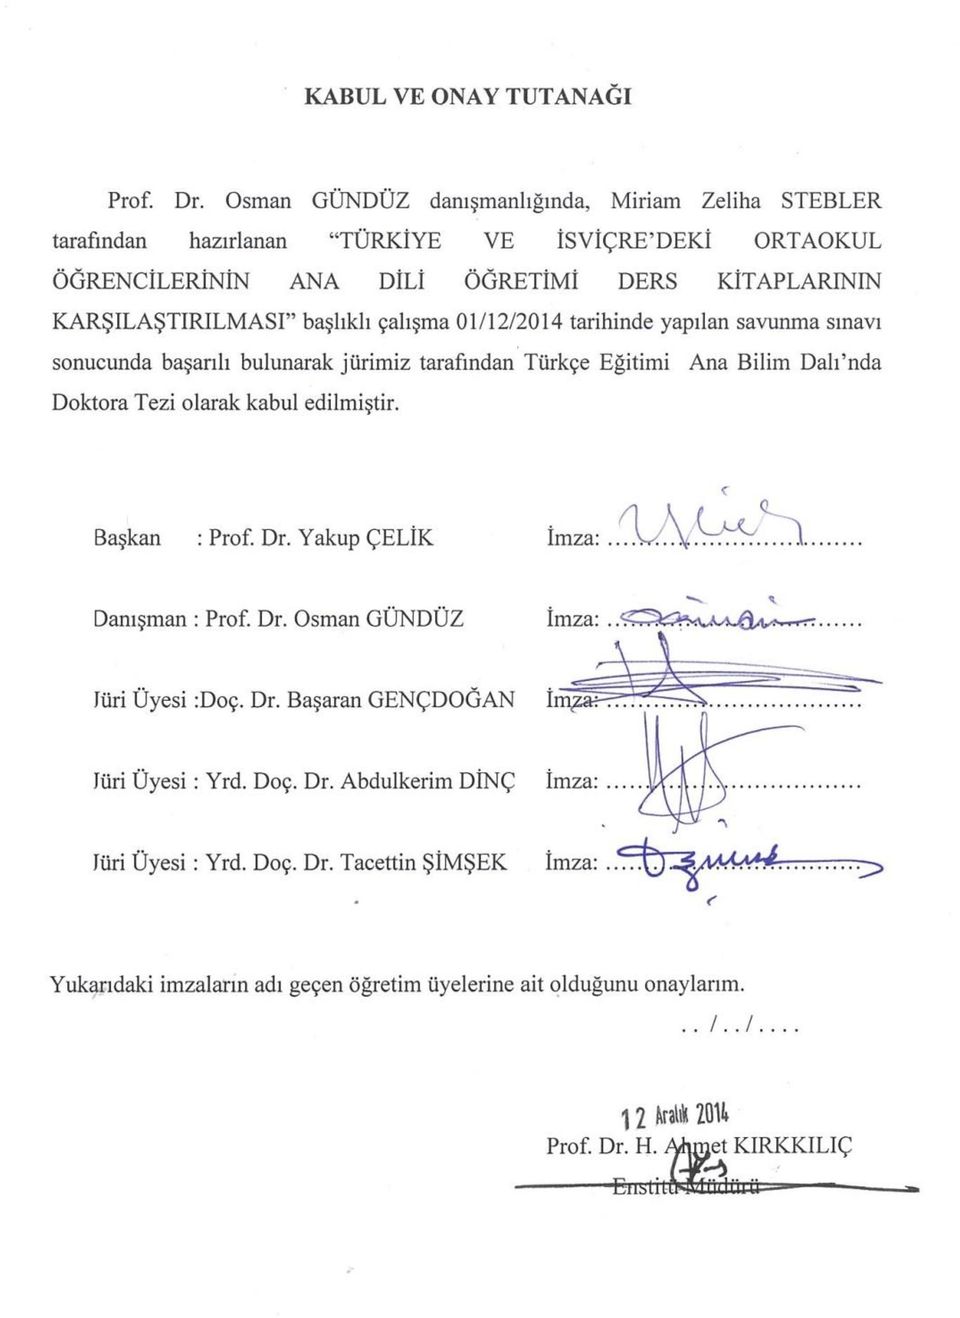 çalışma 01/12/2014 tarihinde yapılan savunma sınavı sonucunda başarılı bulunarak jürimiz tarafından Türkçe Eğitimi Ana Bilim Dalı nda Doktora Tezi olarak kabul edilmiştir.